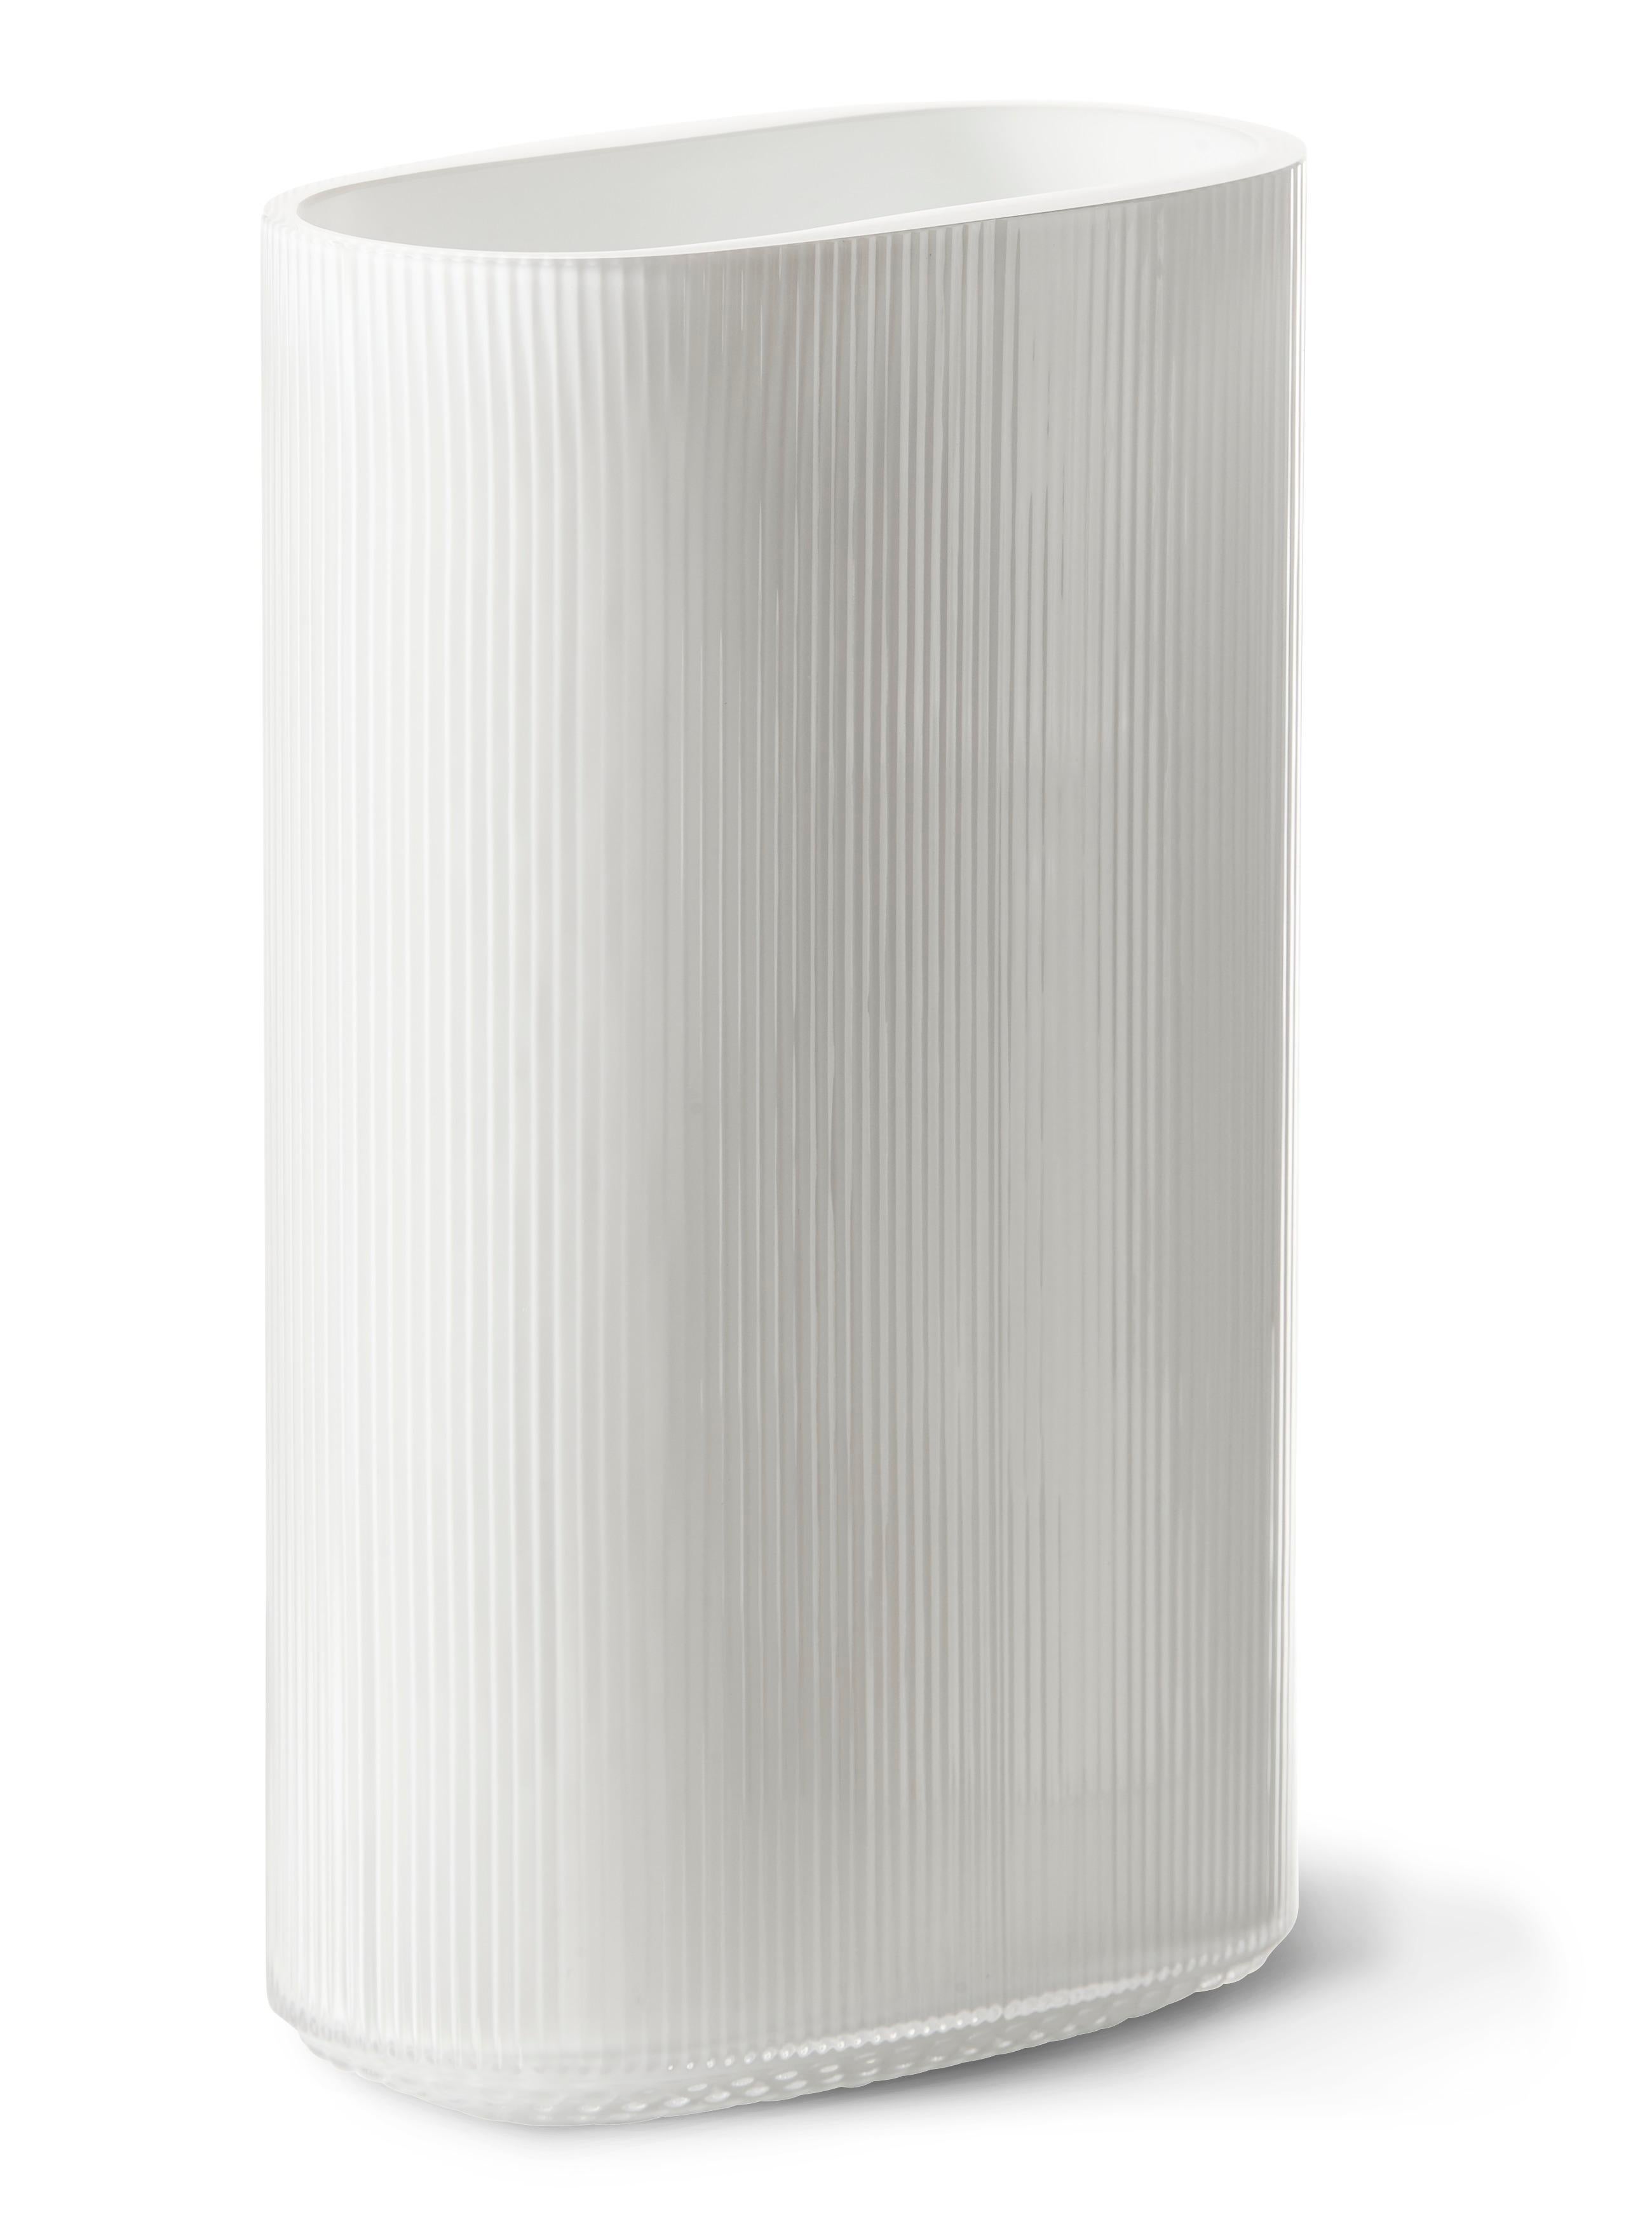 Schöne ovale Vase aus mundgeblasenem Opalglas. Die arktische Vase wurde ursprünglich in den 1960er Jahren von dem renommierten schwedischen Glaskünstler und Silberschmied Gunnar Cyrén entworfen und wird nun zum ersten Mal von Warm Nordic